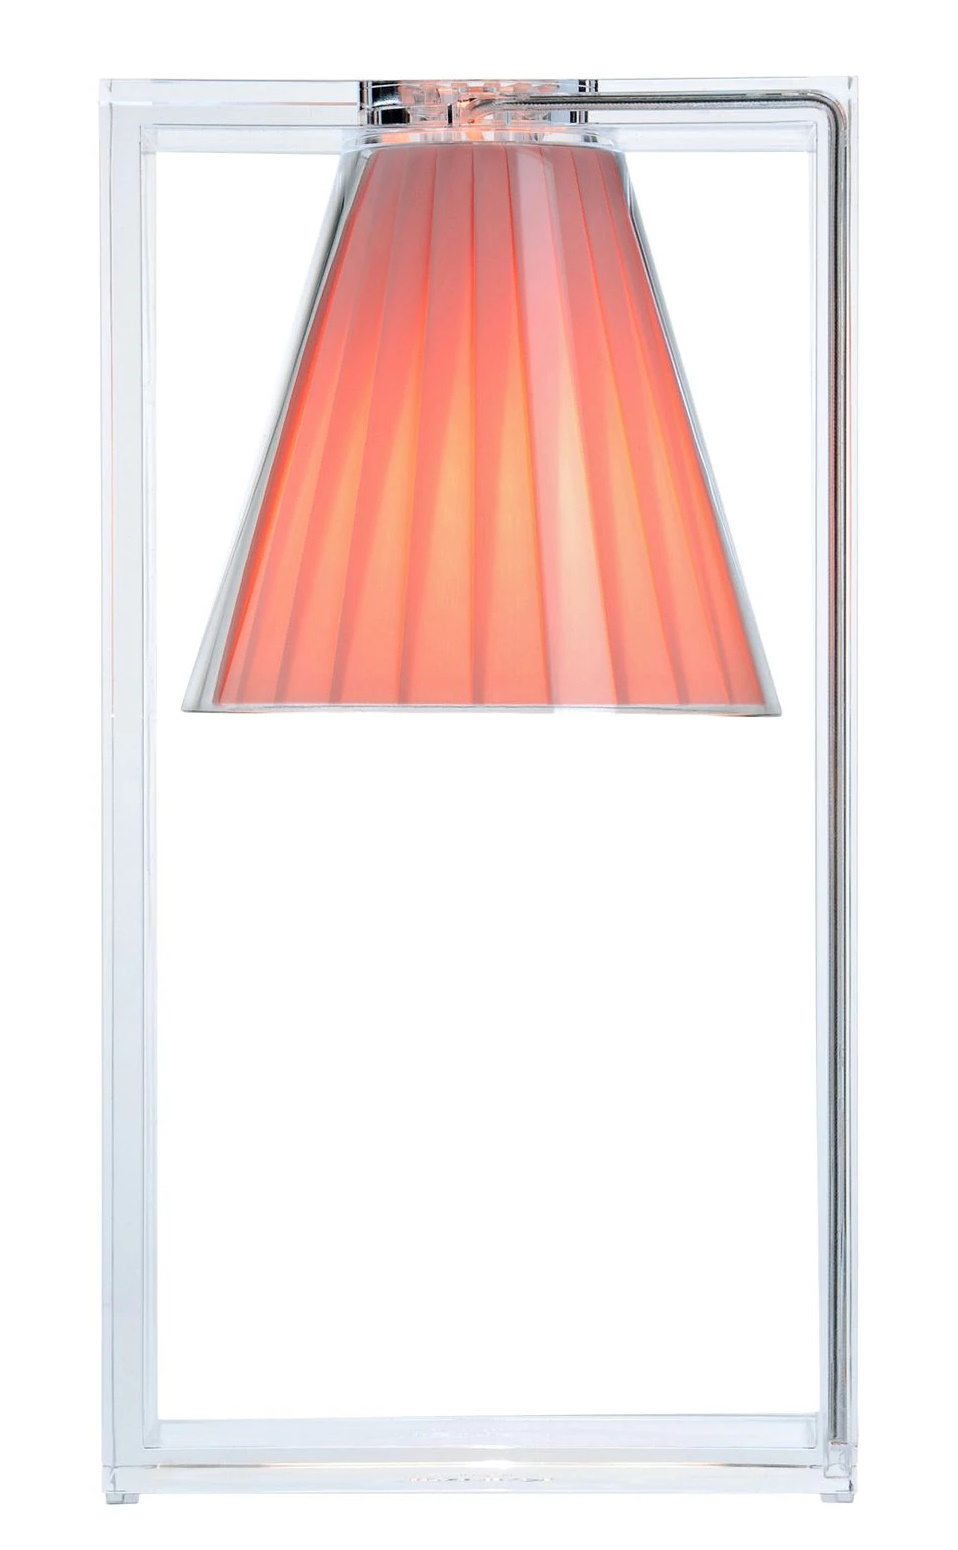 Veioza Kartell Light Air design Eugeni Quitllet 32x17x14cm roz Kartell